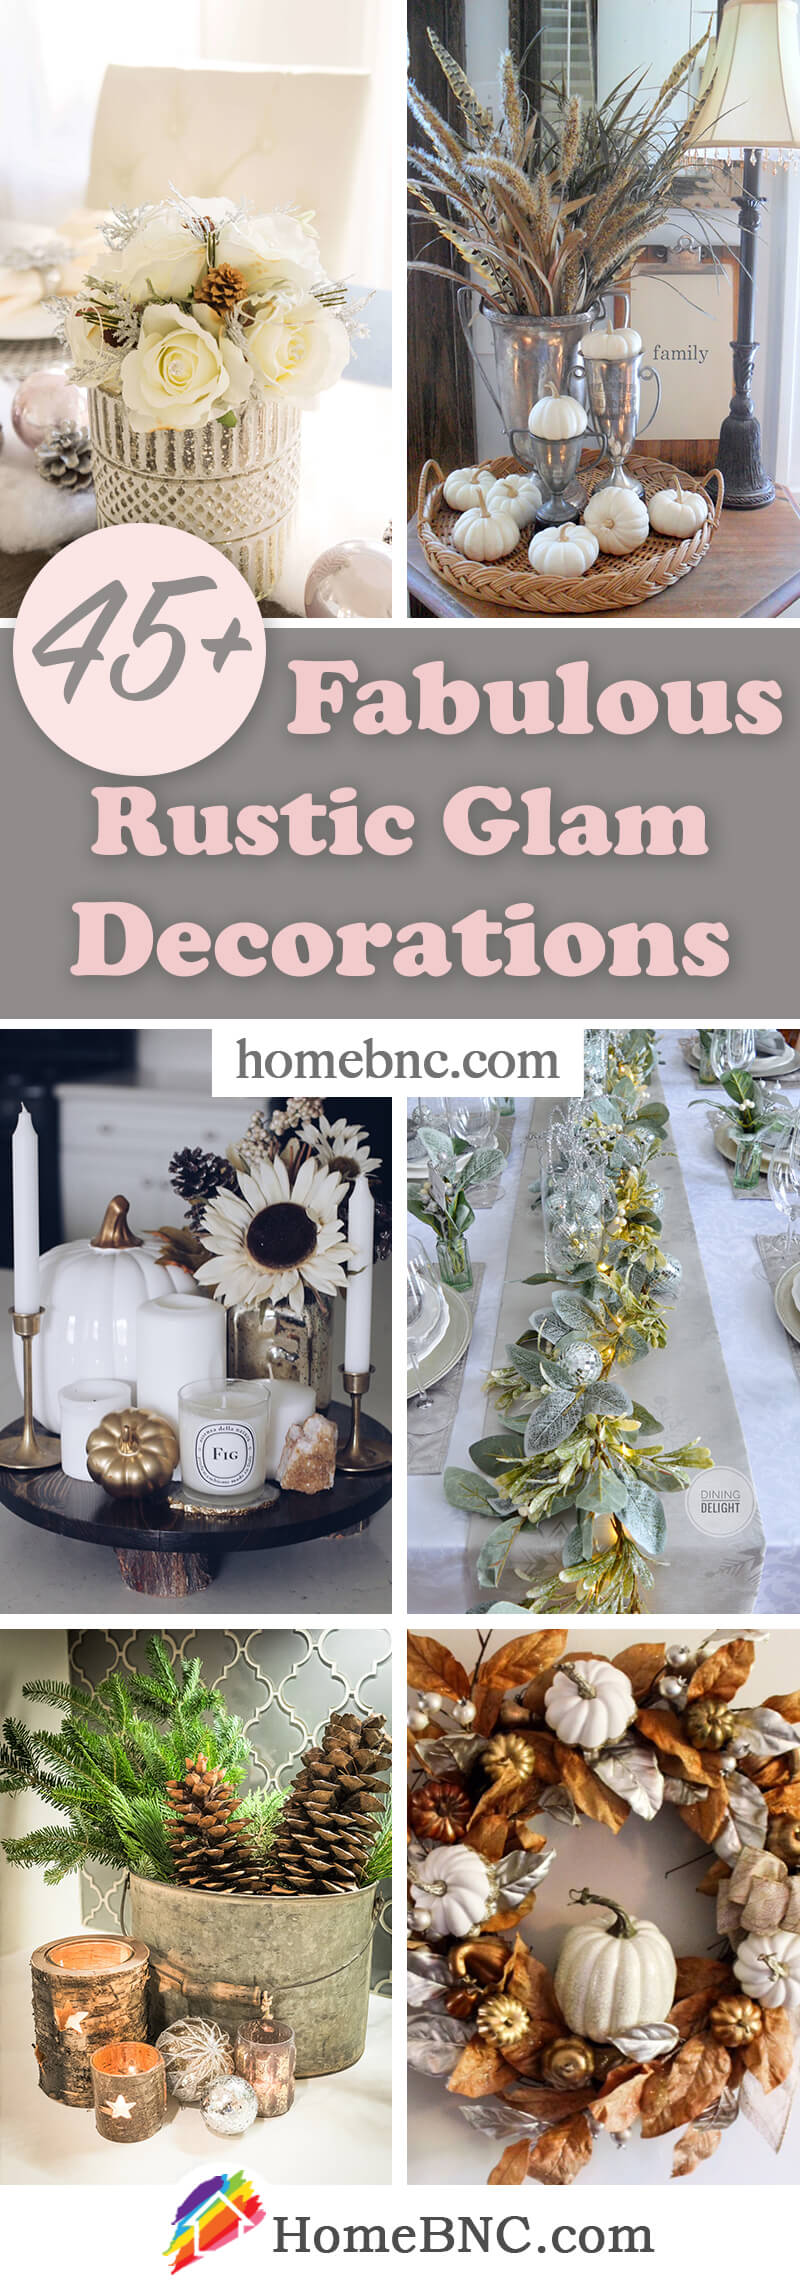 Rustic Glam Decorations